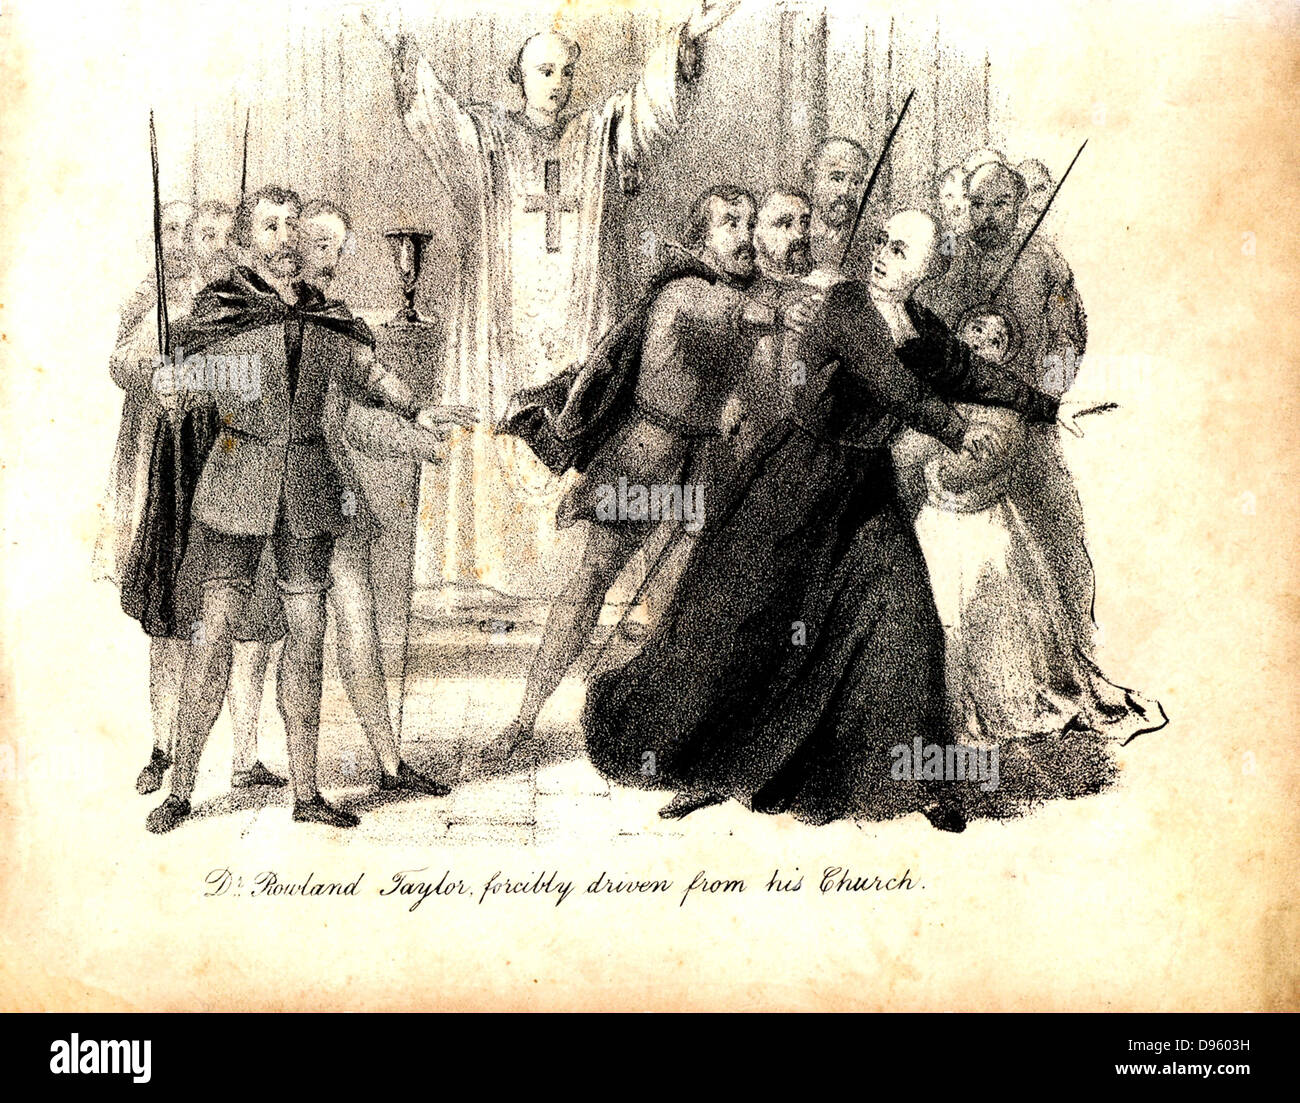 Rowland Taylor (1510-1555), mártir protestante inglés, desalojados por la fuerza de su iglesia. Ardió en el reinado de María I por herejía, es decir, denunciar la regla del celibato para el clero católico romano, y para denunciar la doctrina de Transubstatiation. Desde 'El martirio cristiano", Londres, 1838. Foto de stock